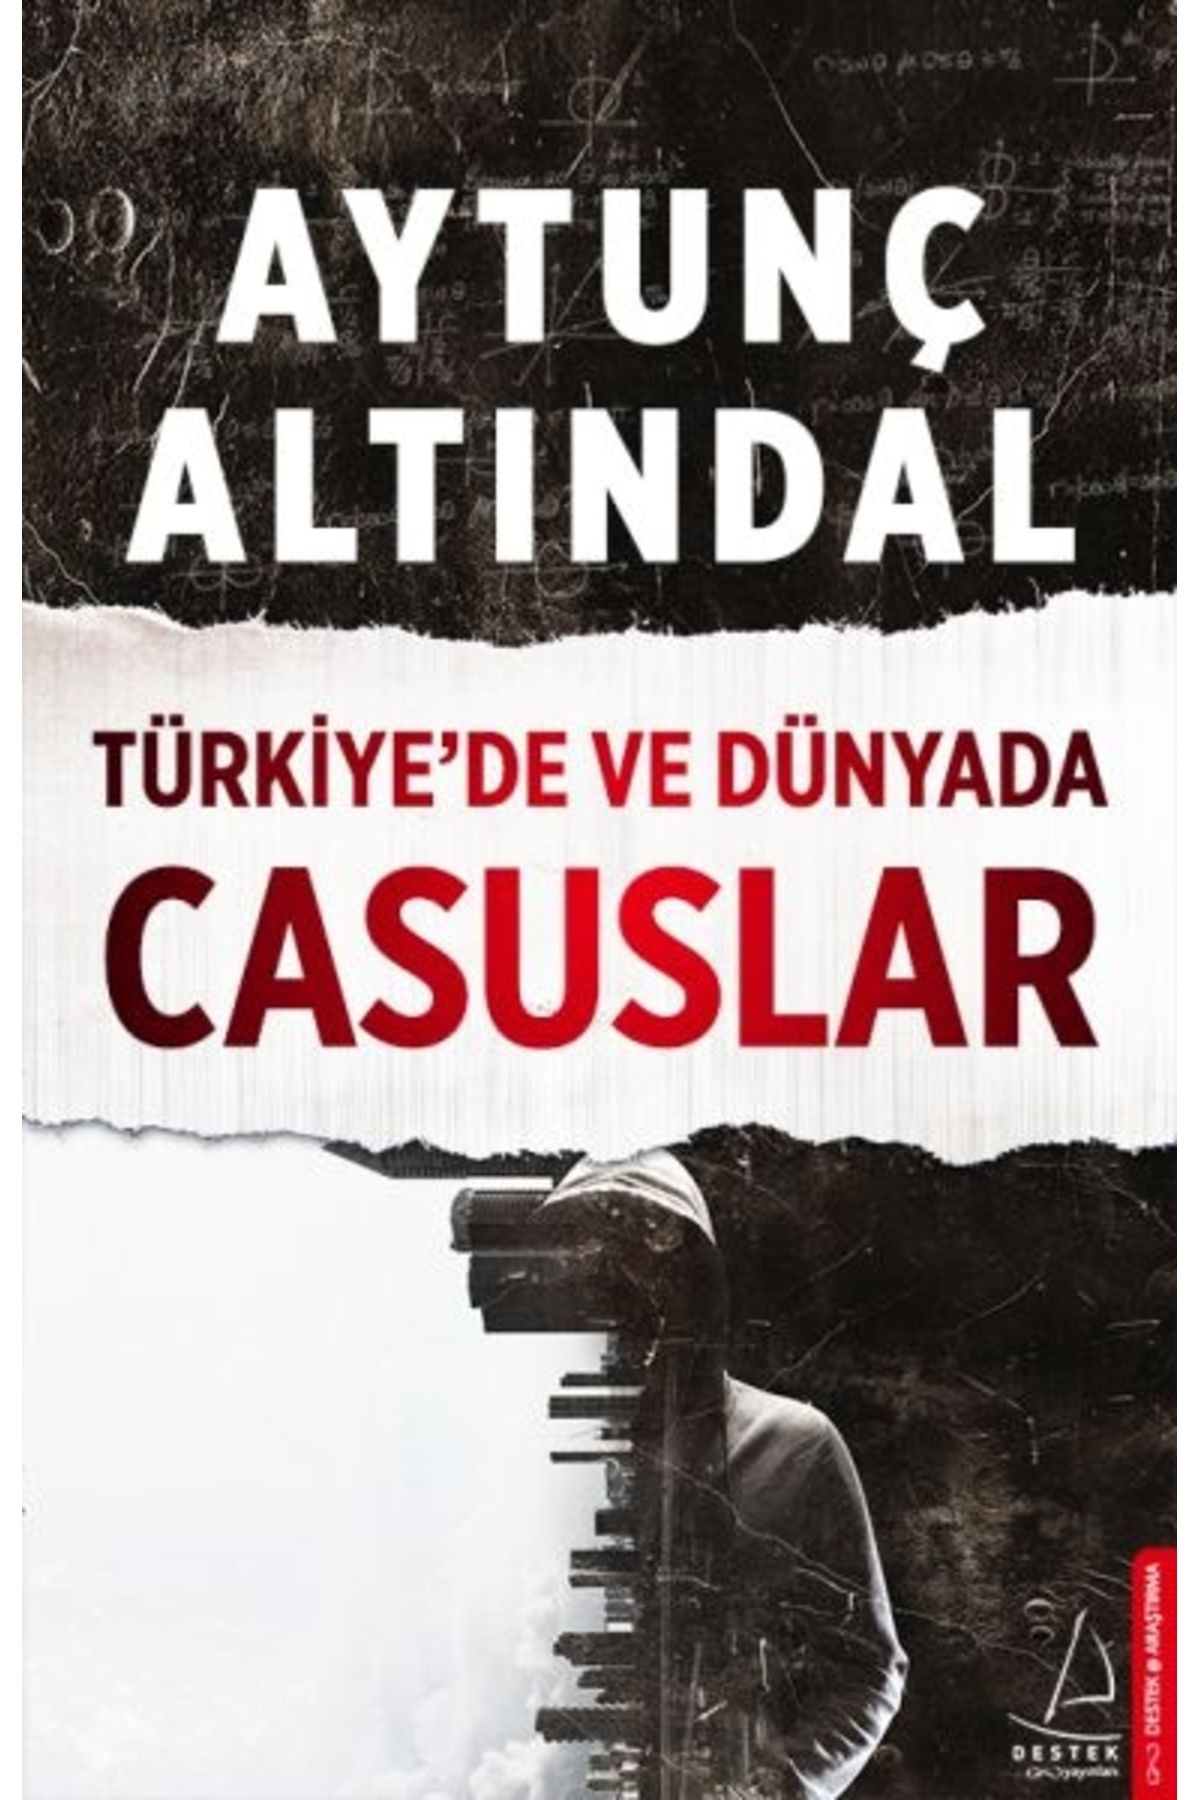 Destek Yayınları Türkiye’de ve Dünyada Casuslar